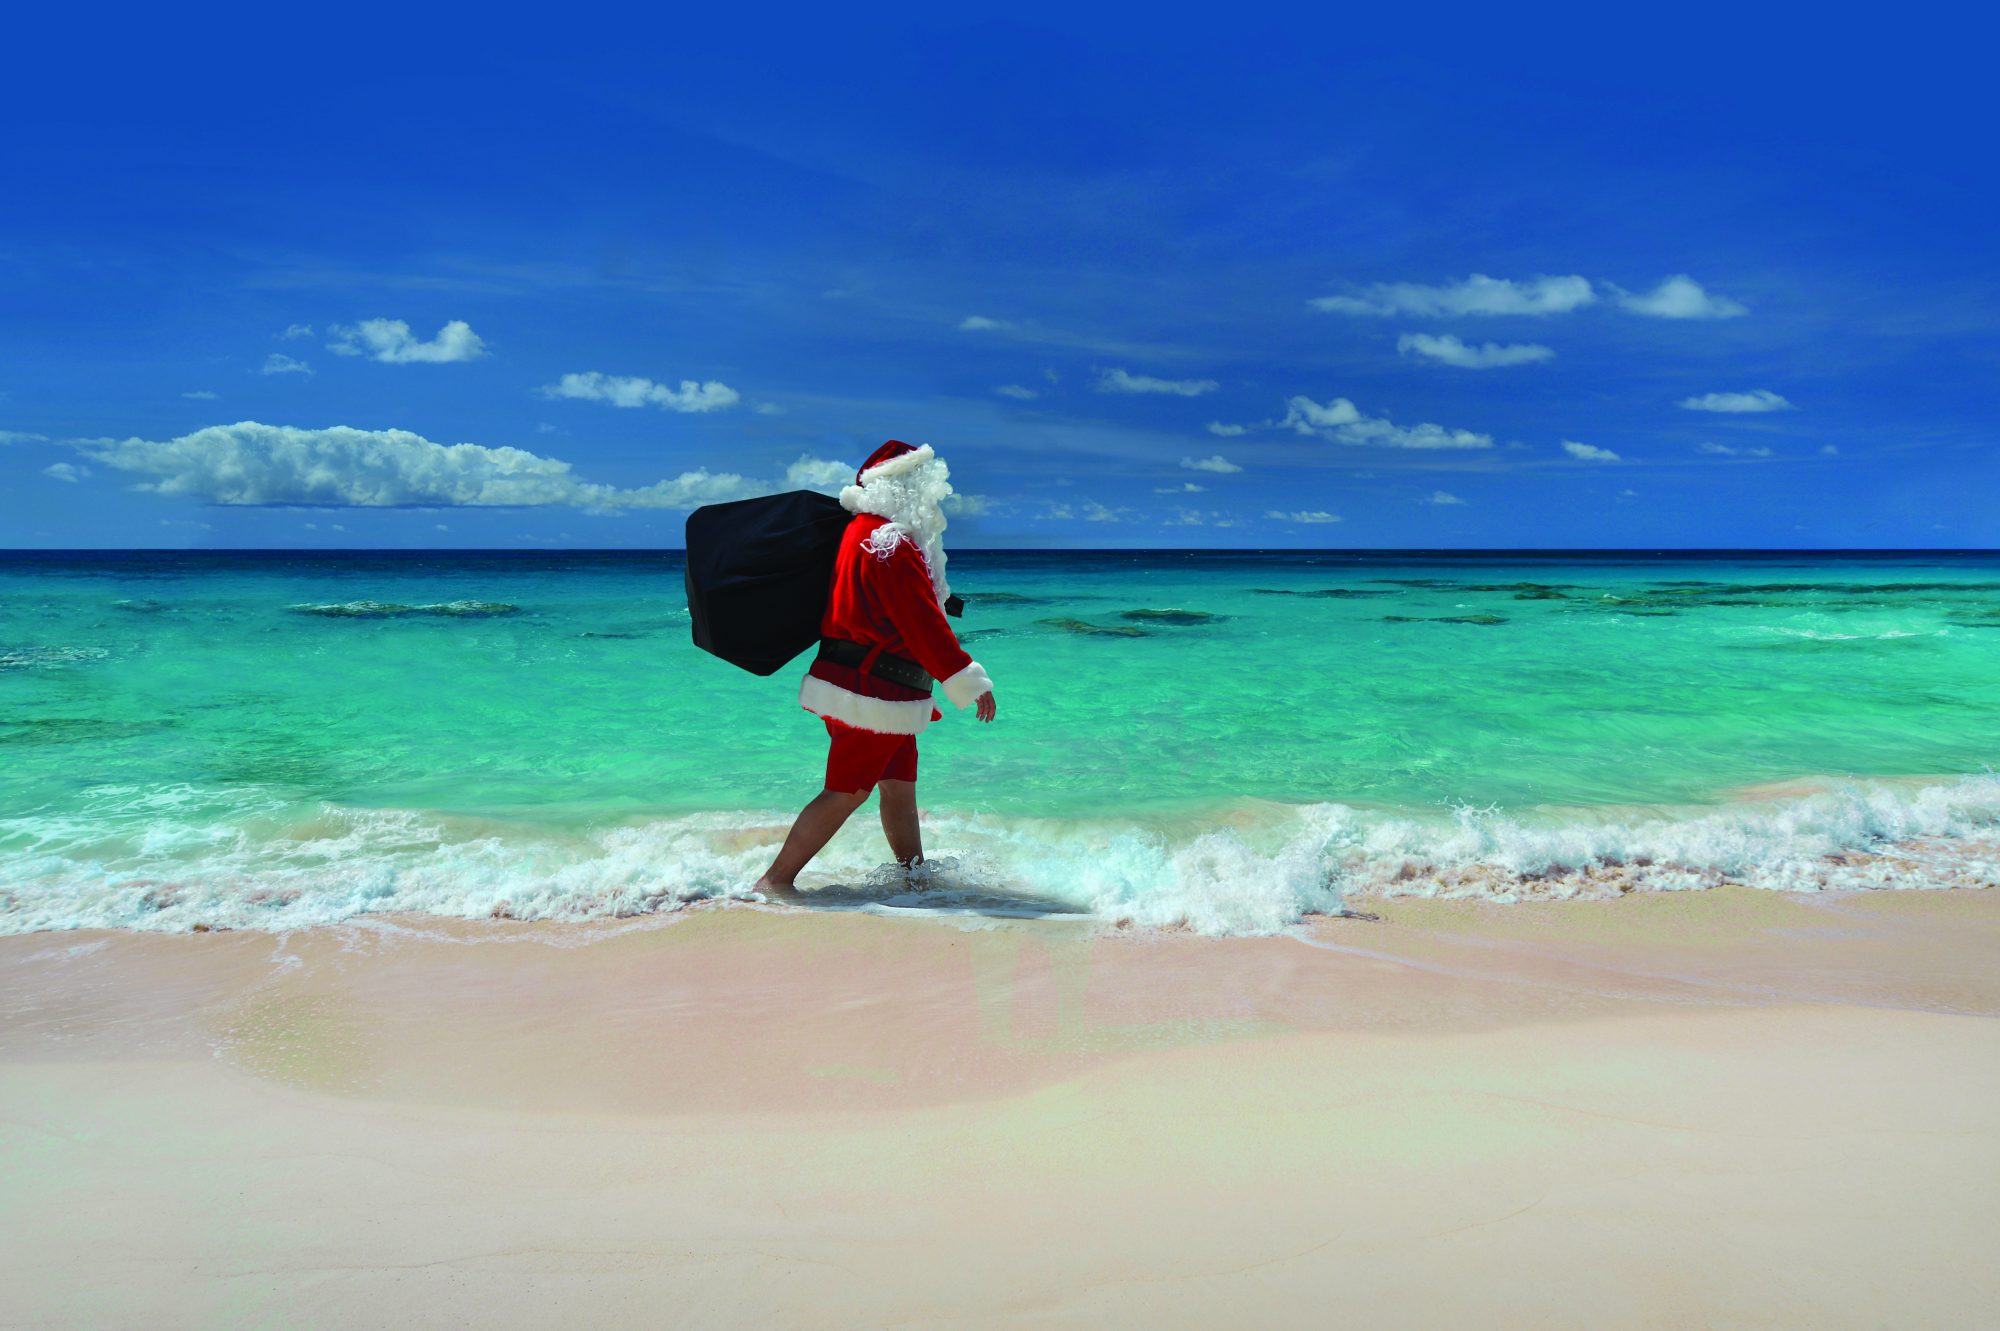 Fairmont Southampton – Santa on the Beach